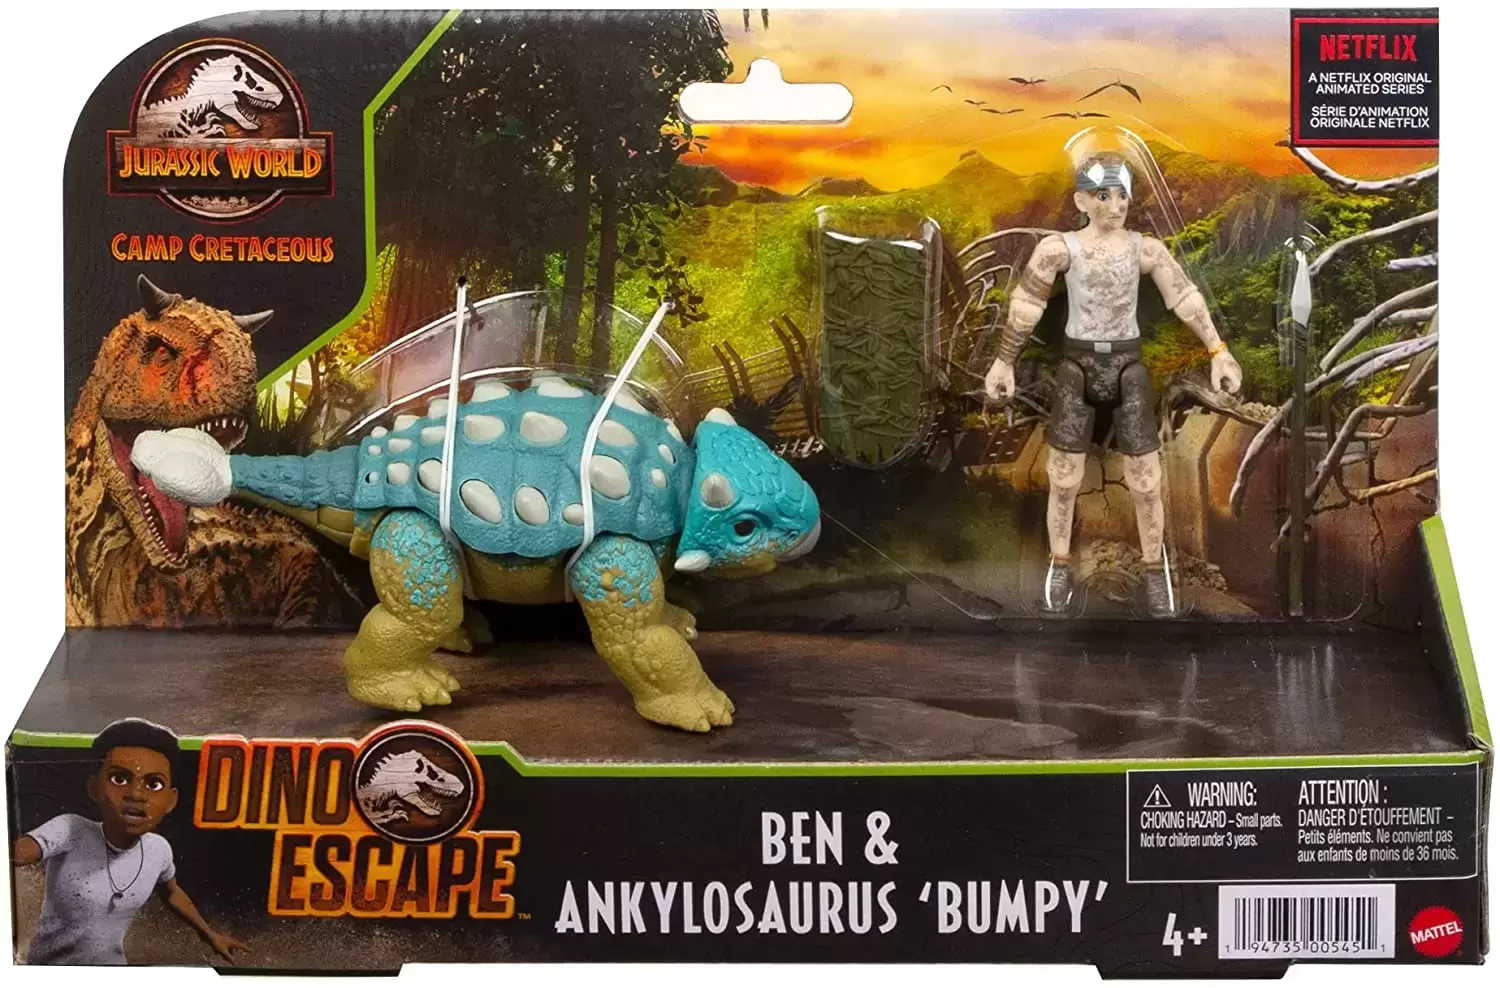 Jurassic World : Camp Cretaceous / Dino Escape - Ben & Ankylosaurus Bumpy